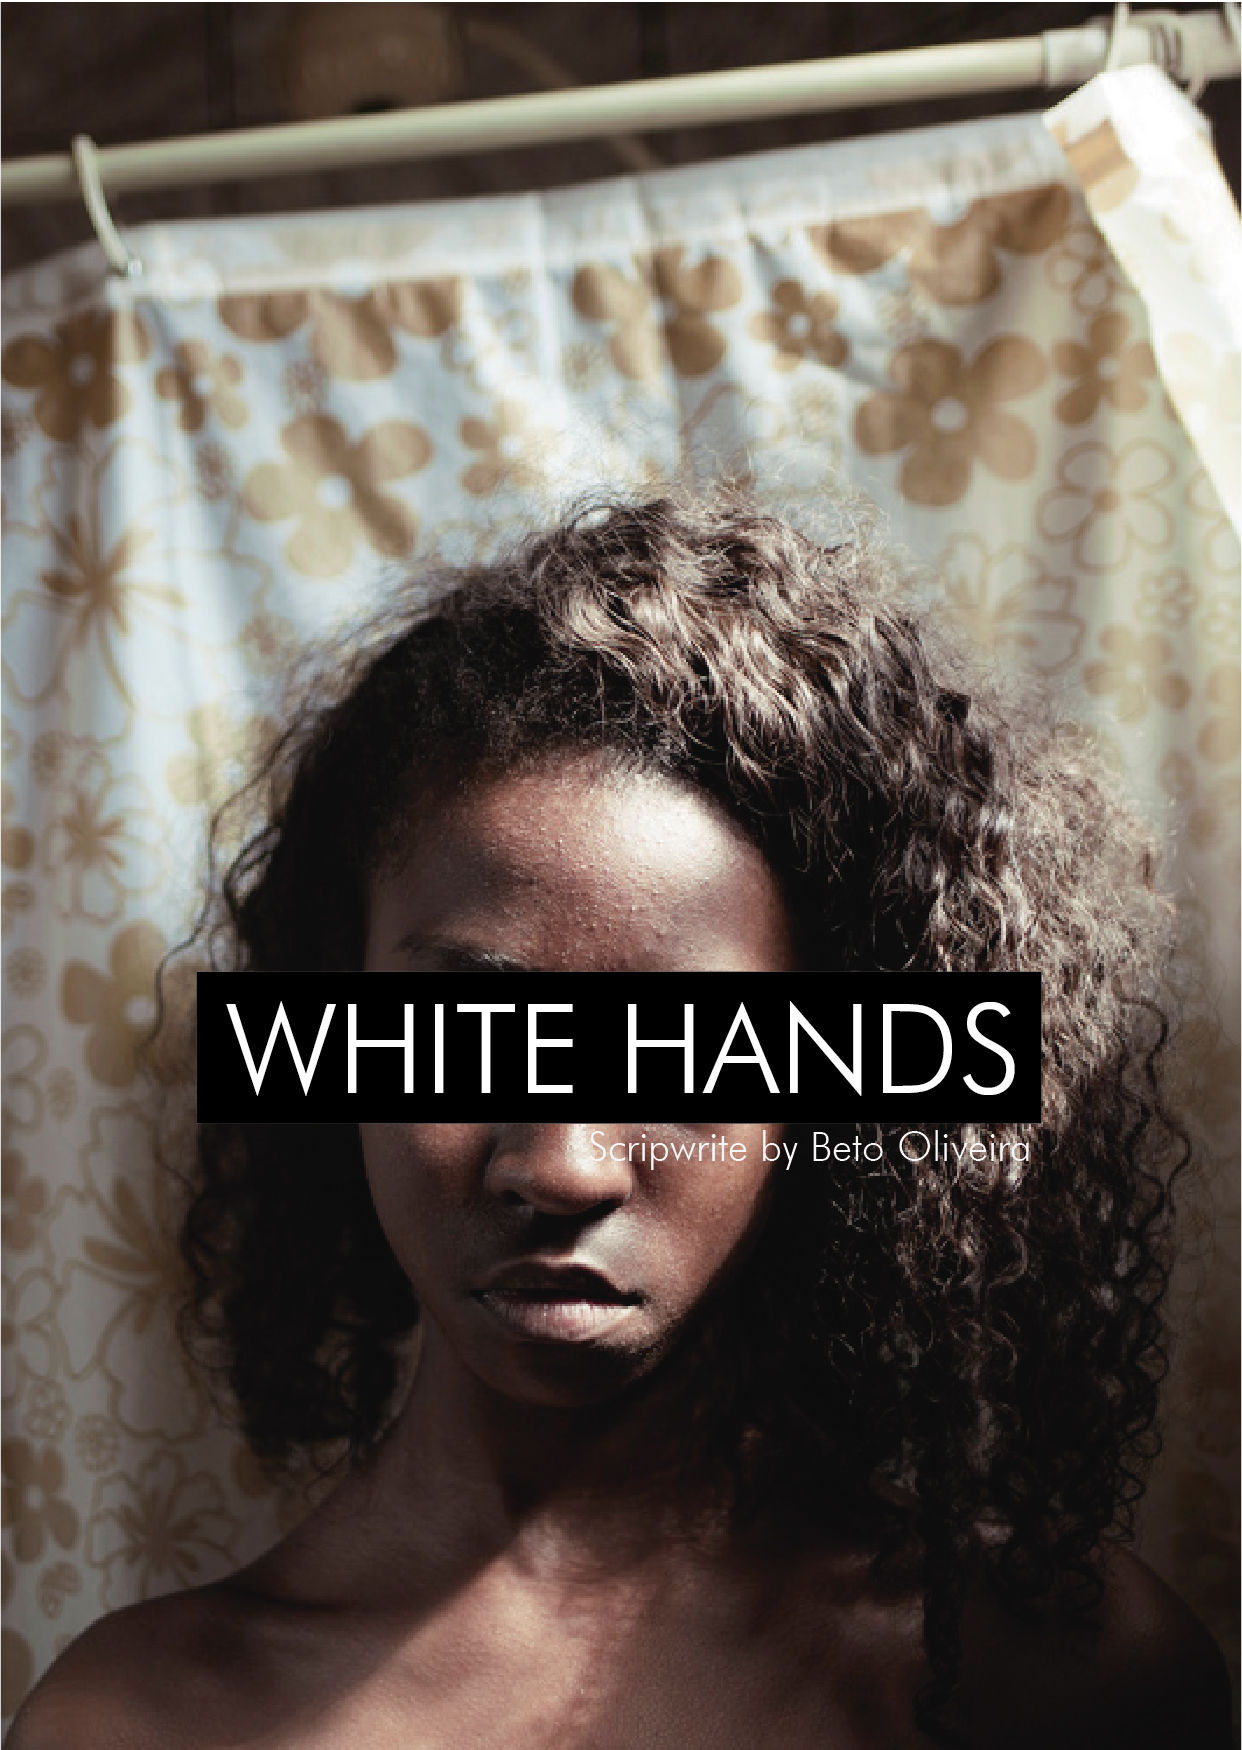 WHITE HANDS